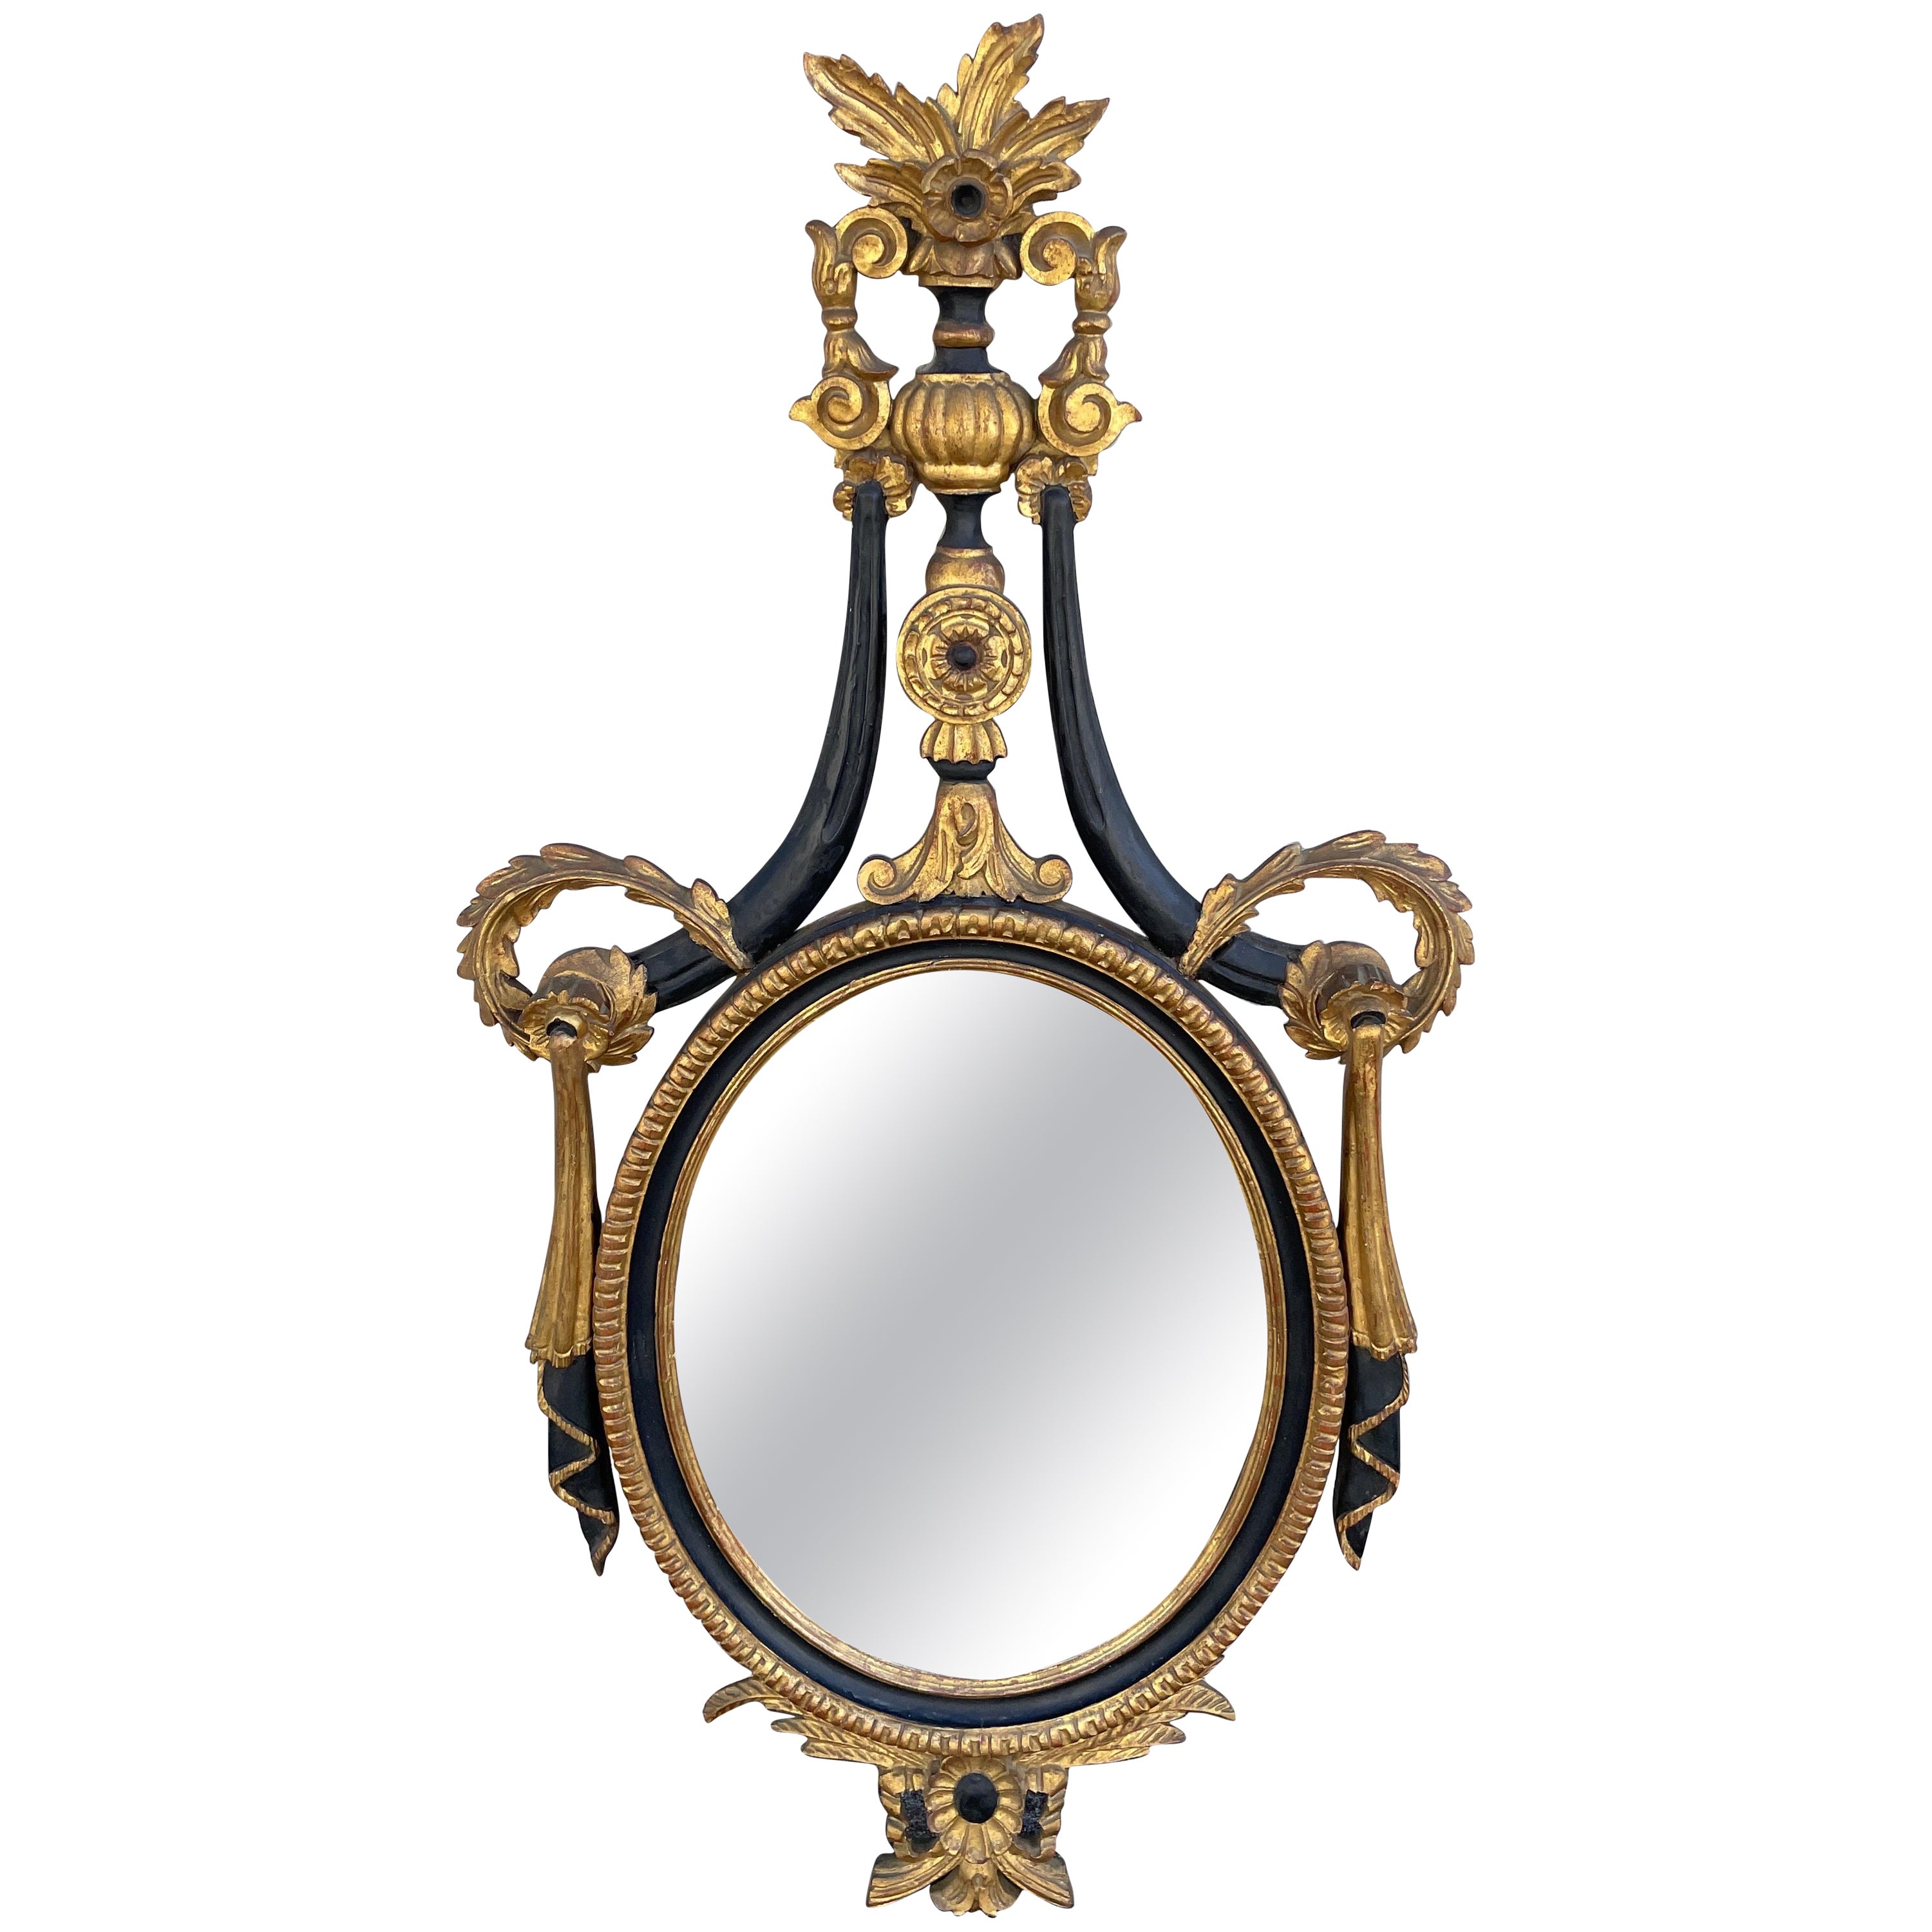 Handgeschnitzter, bemalter und vergoldeter neoklassizistischer Spiegel von Palladio